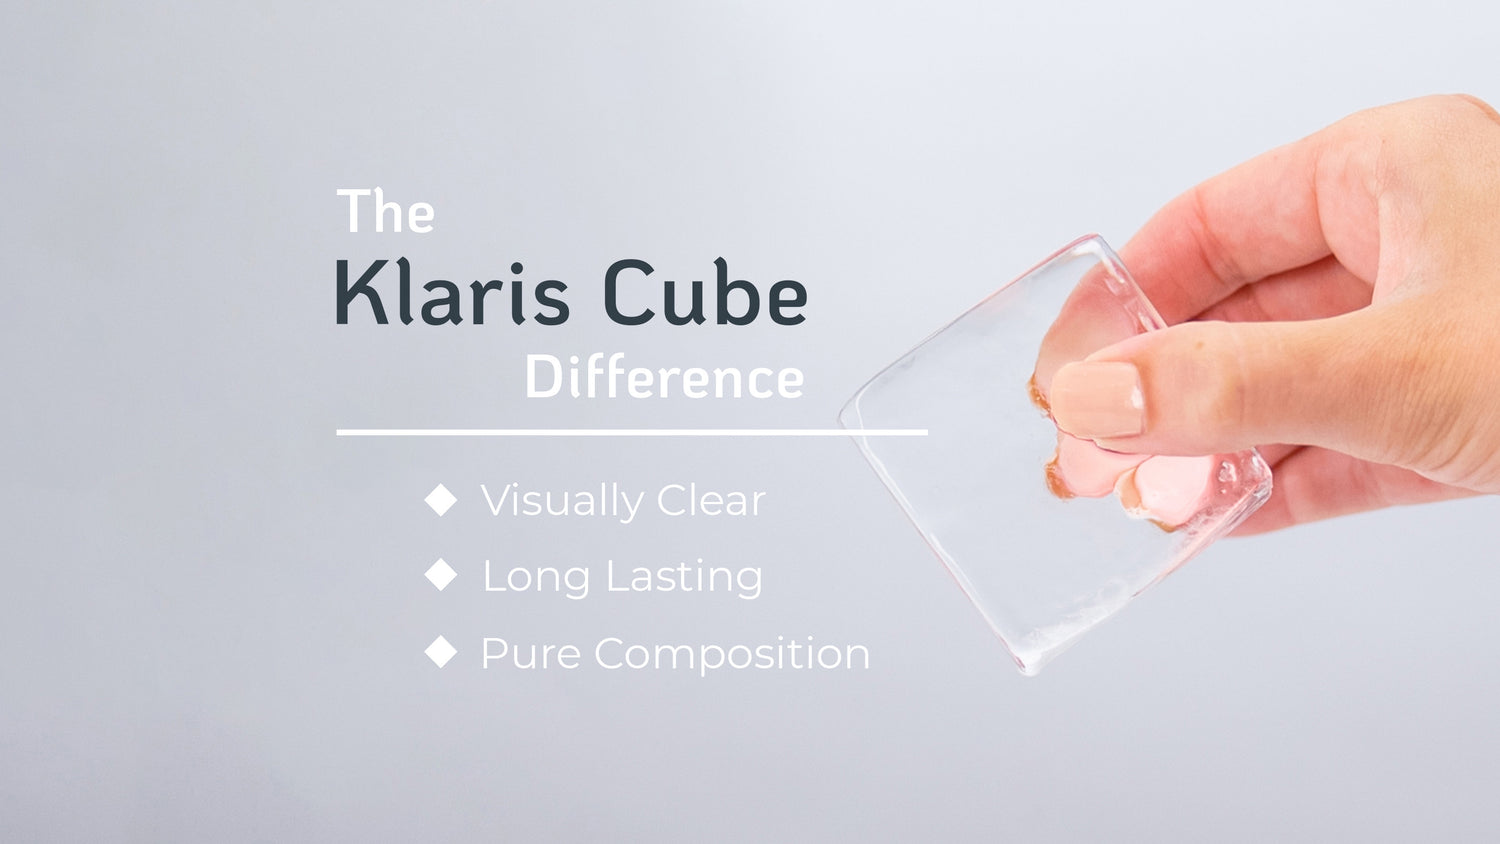 https://craftklaris.com/cdn/shop/files/The_Klaris_Cube_Difference.jpg?v=1682110260&width=1500